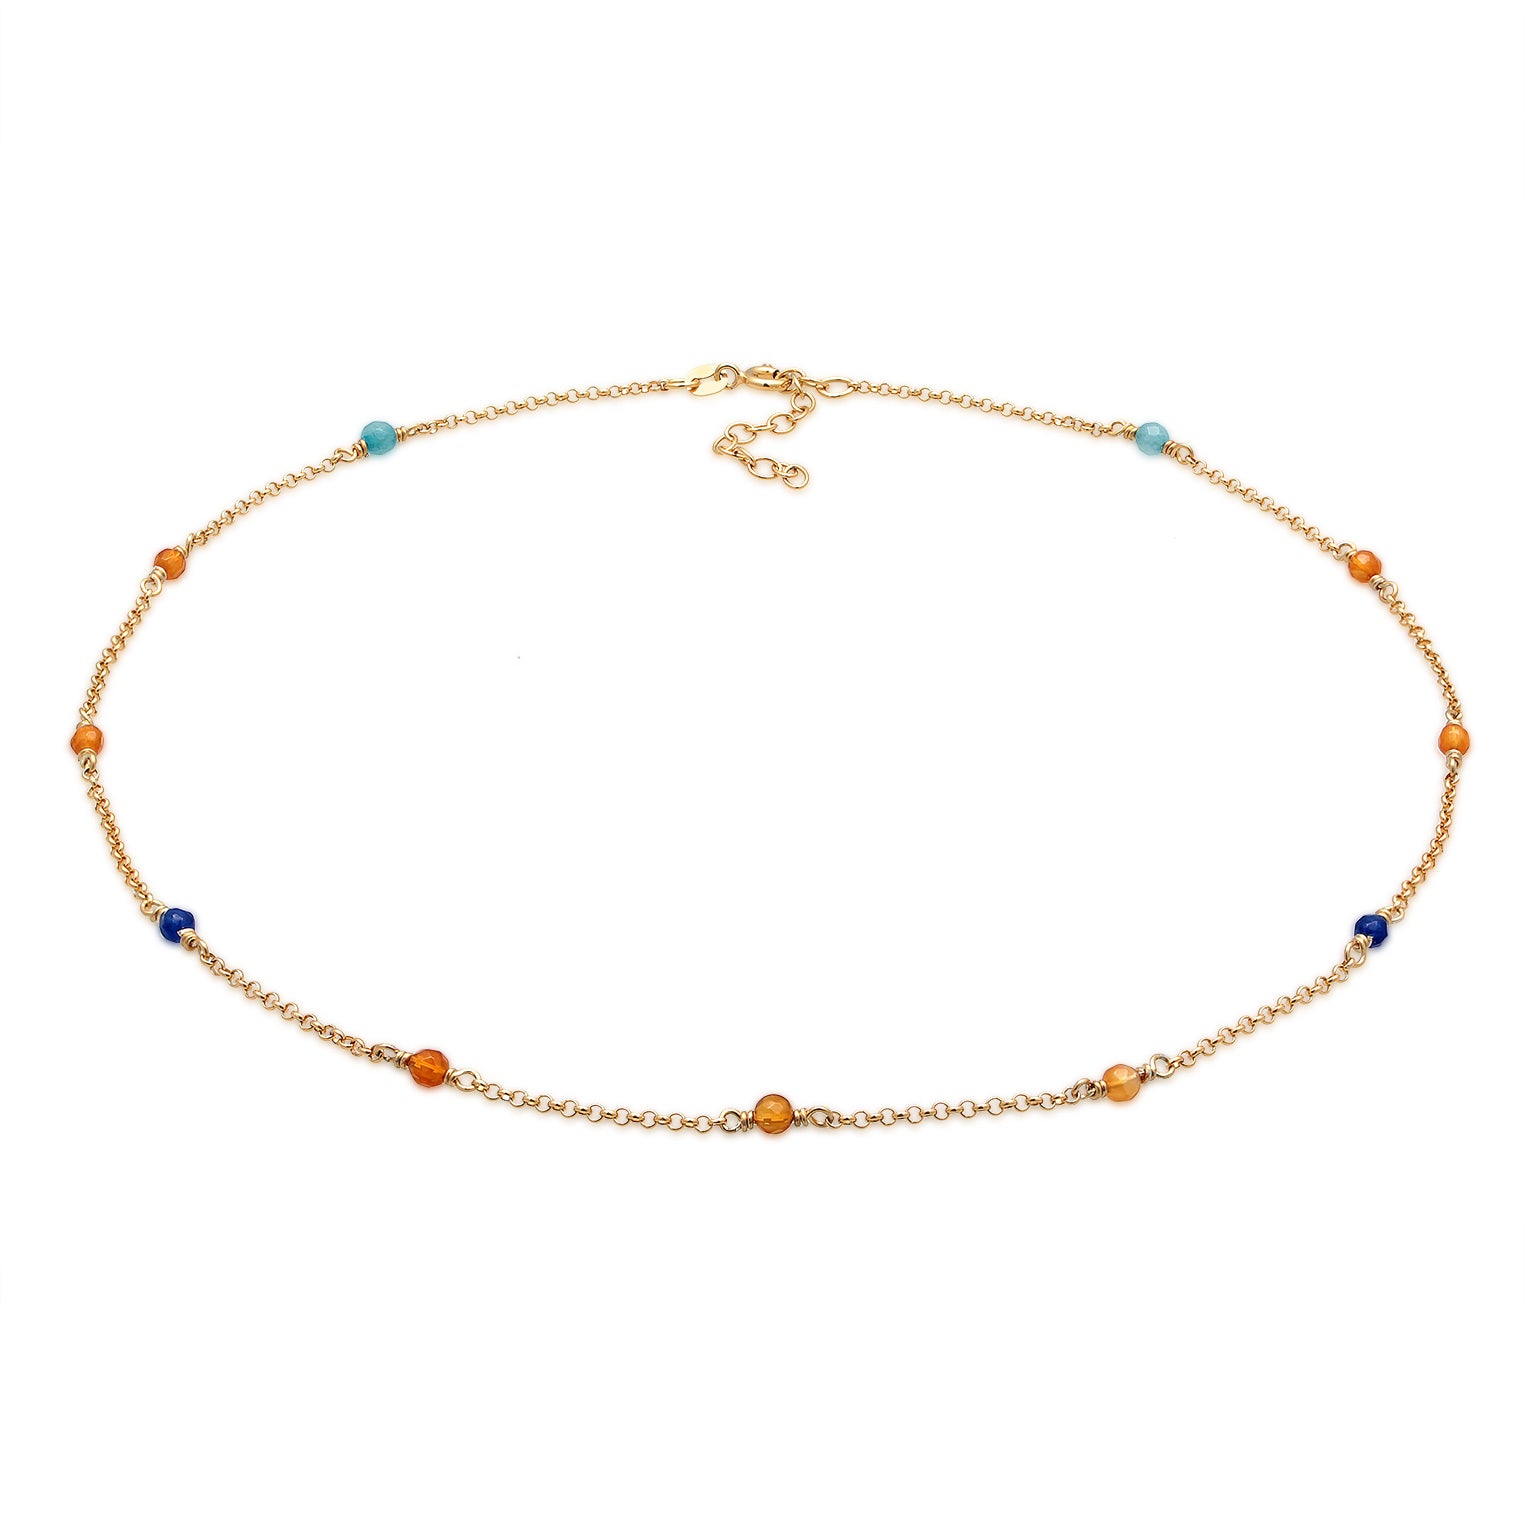 Zweifarbig - Elli | Halskette Beads | Achat (Bunt) | 925er Sterling Silber Vergoldet